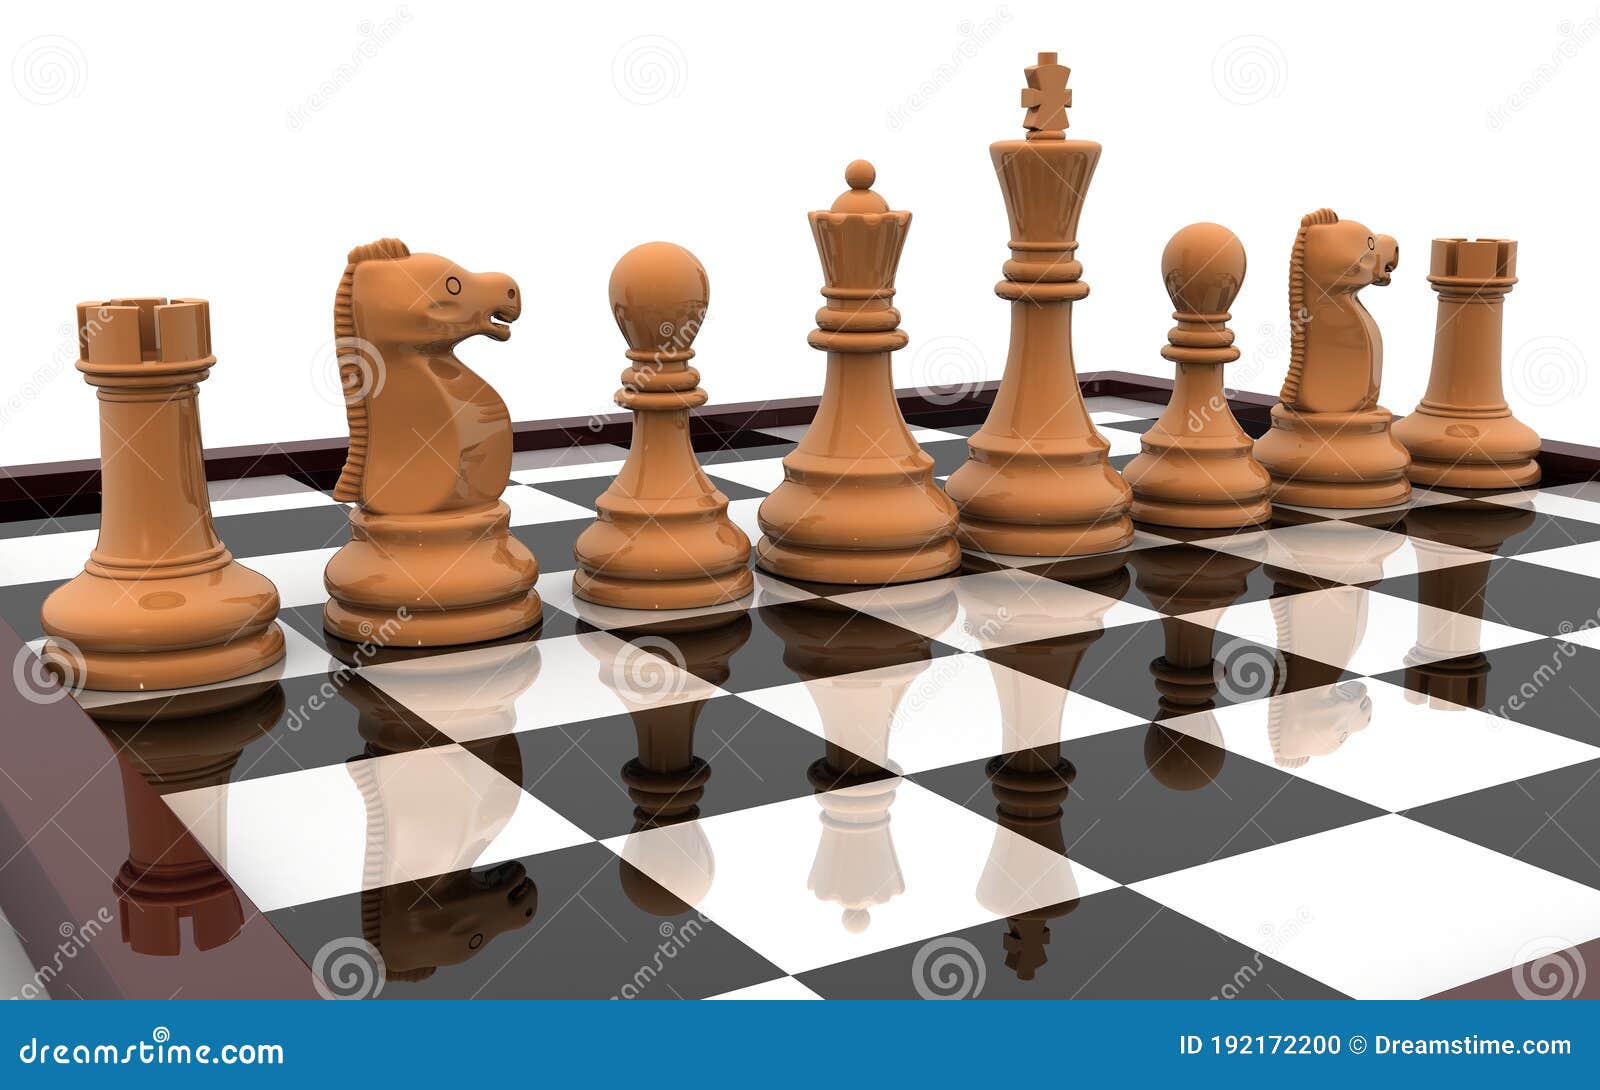 Modelo 3D de Tabuleiro de xadrez e peças. Download grátis.